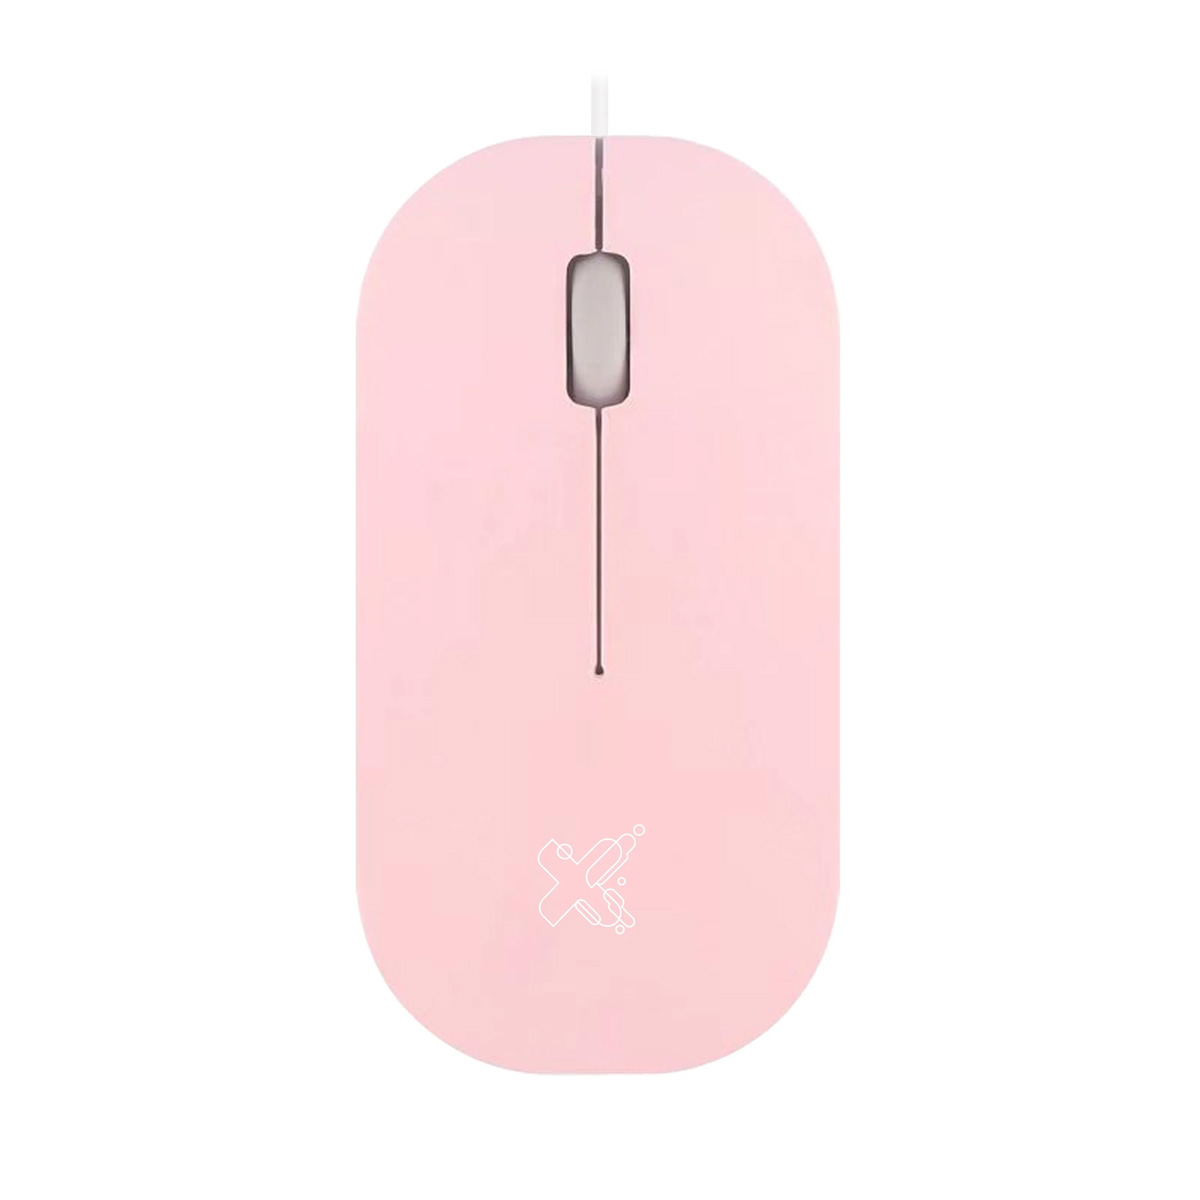 Mouse USB Maxprint Surface - 1200dpi - Rosa - 60000136